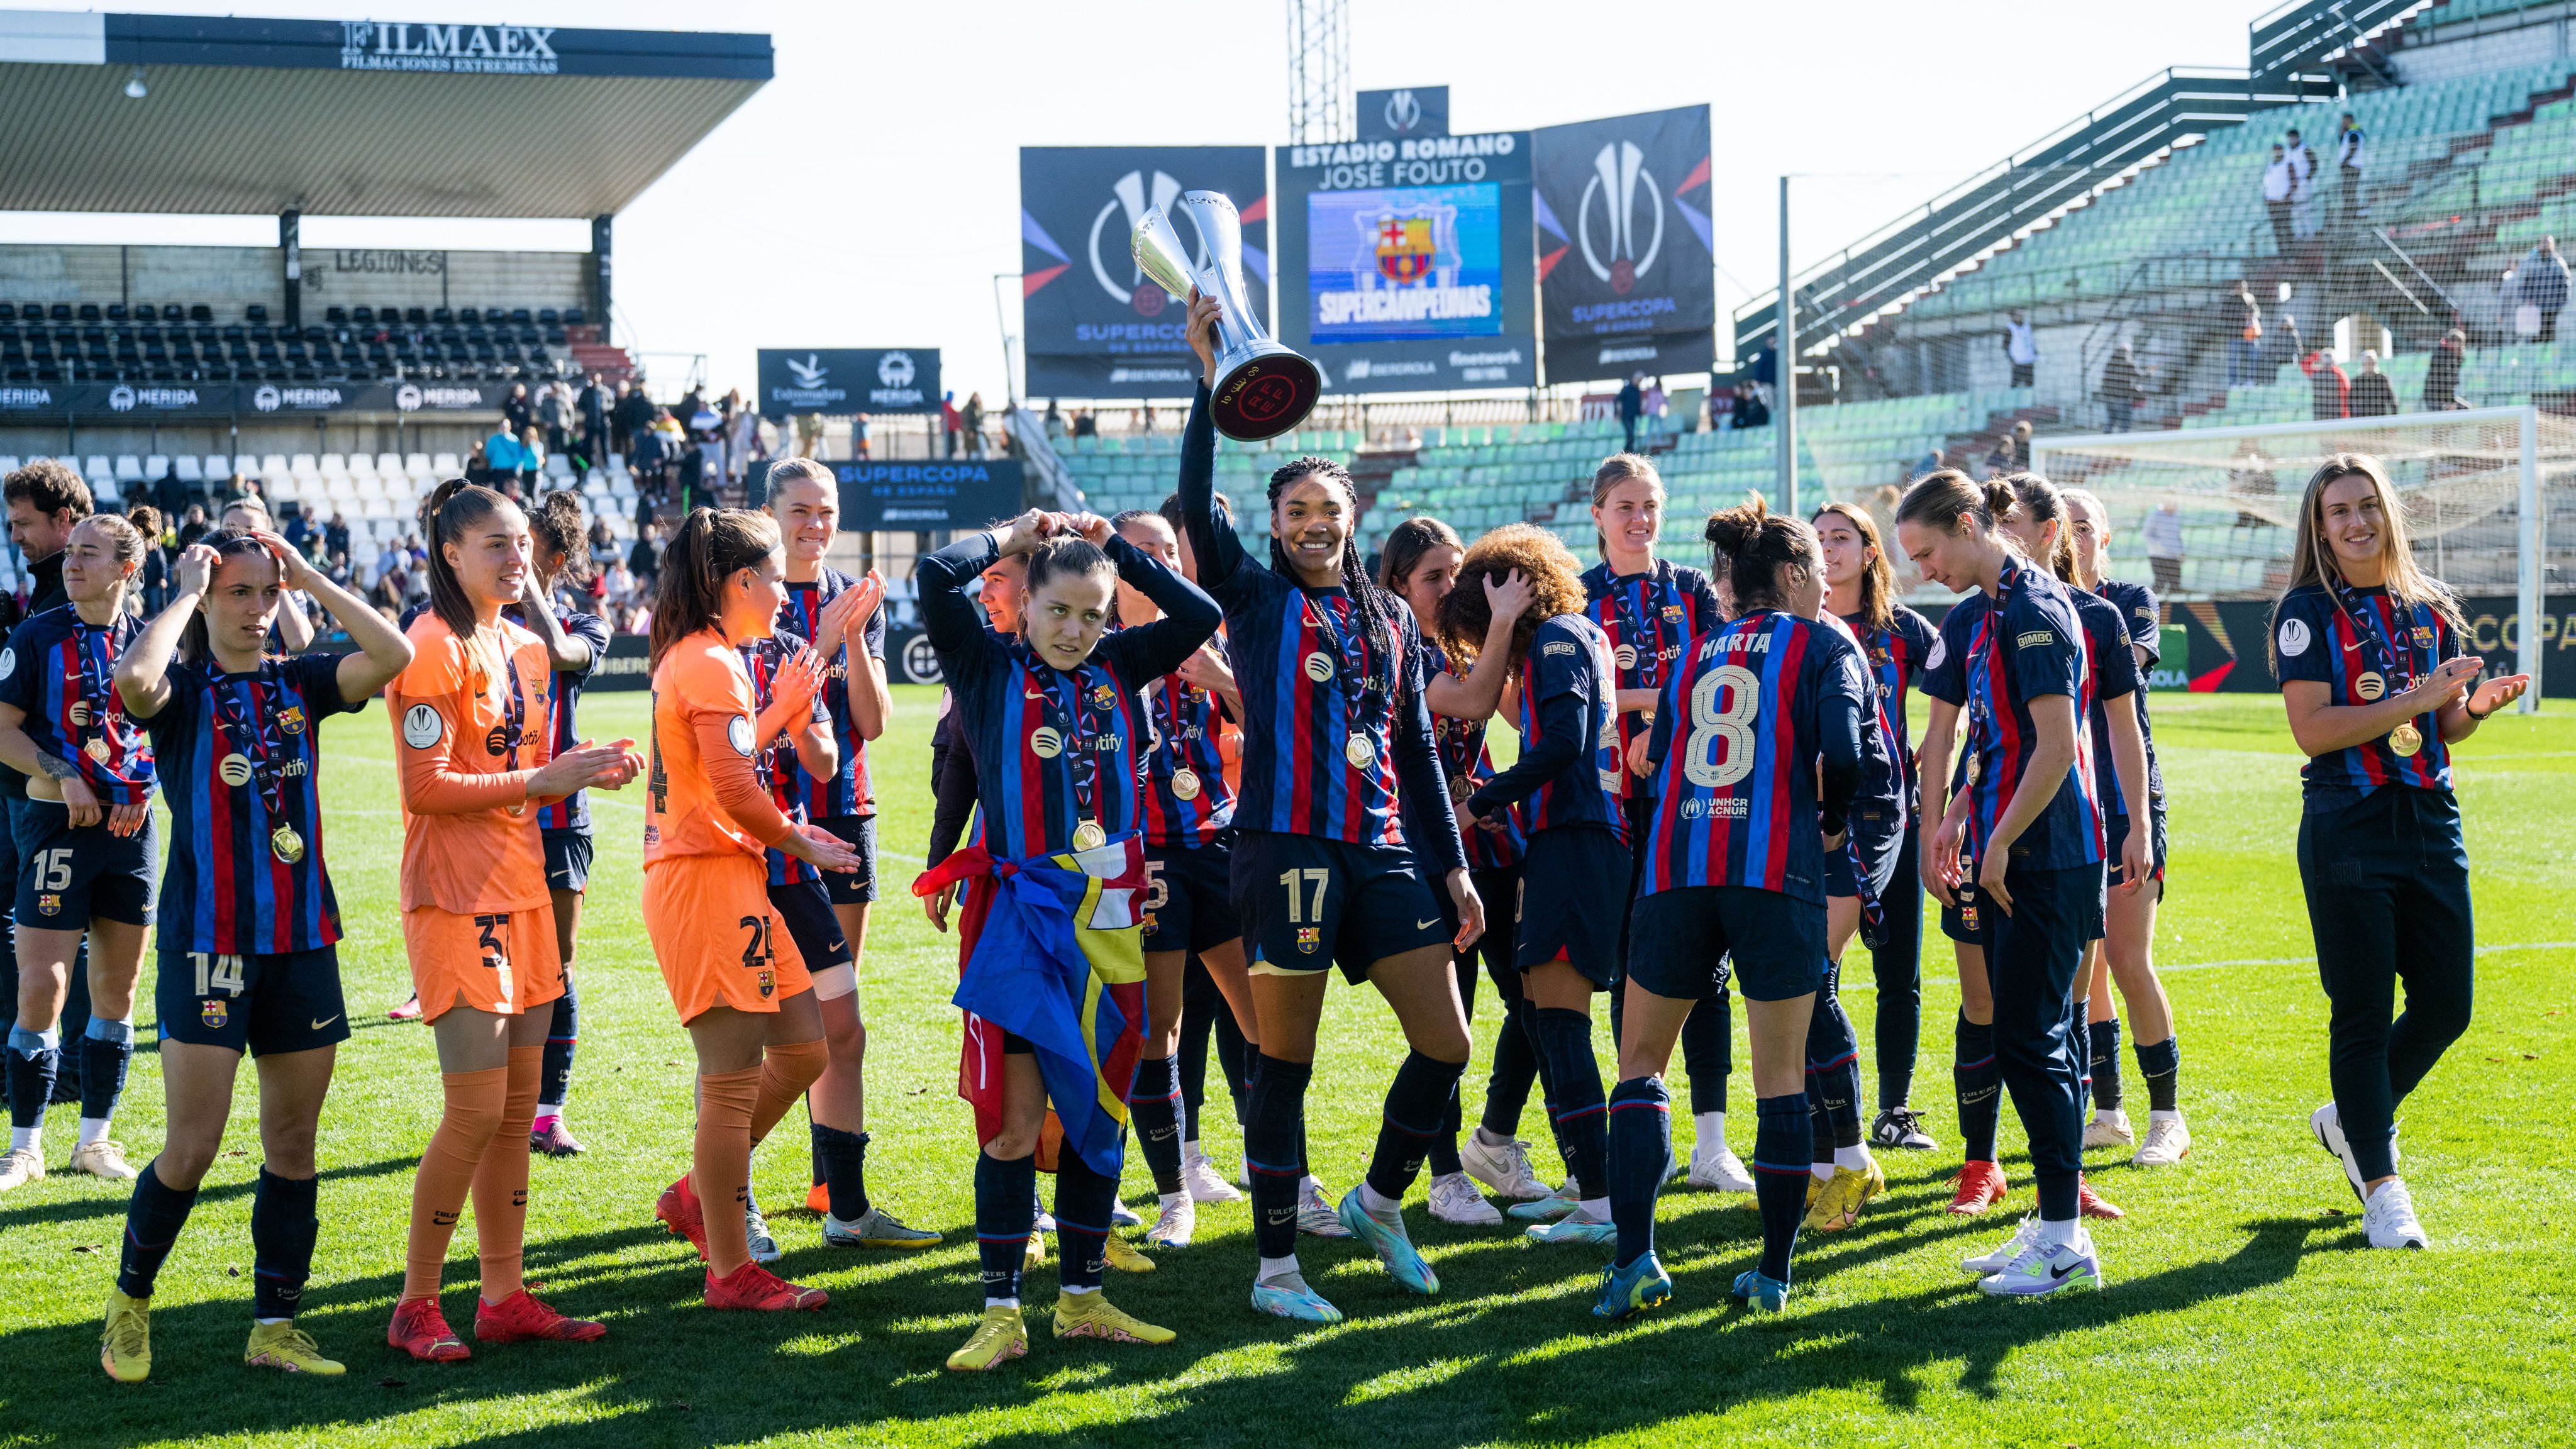 Las futbolistas lucieron contentas a pesar de la manera en la que se llevó la premiación. (Foto Prensa Libre: Barcelona Demení)